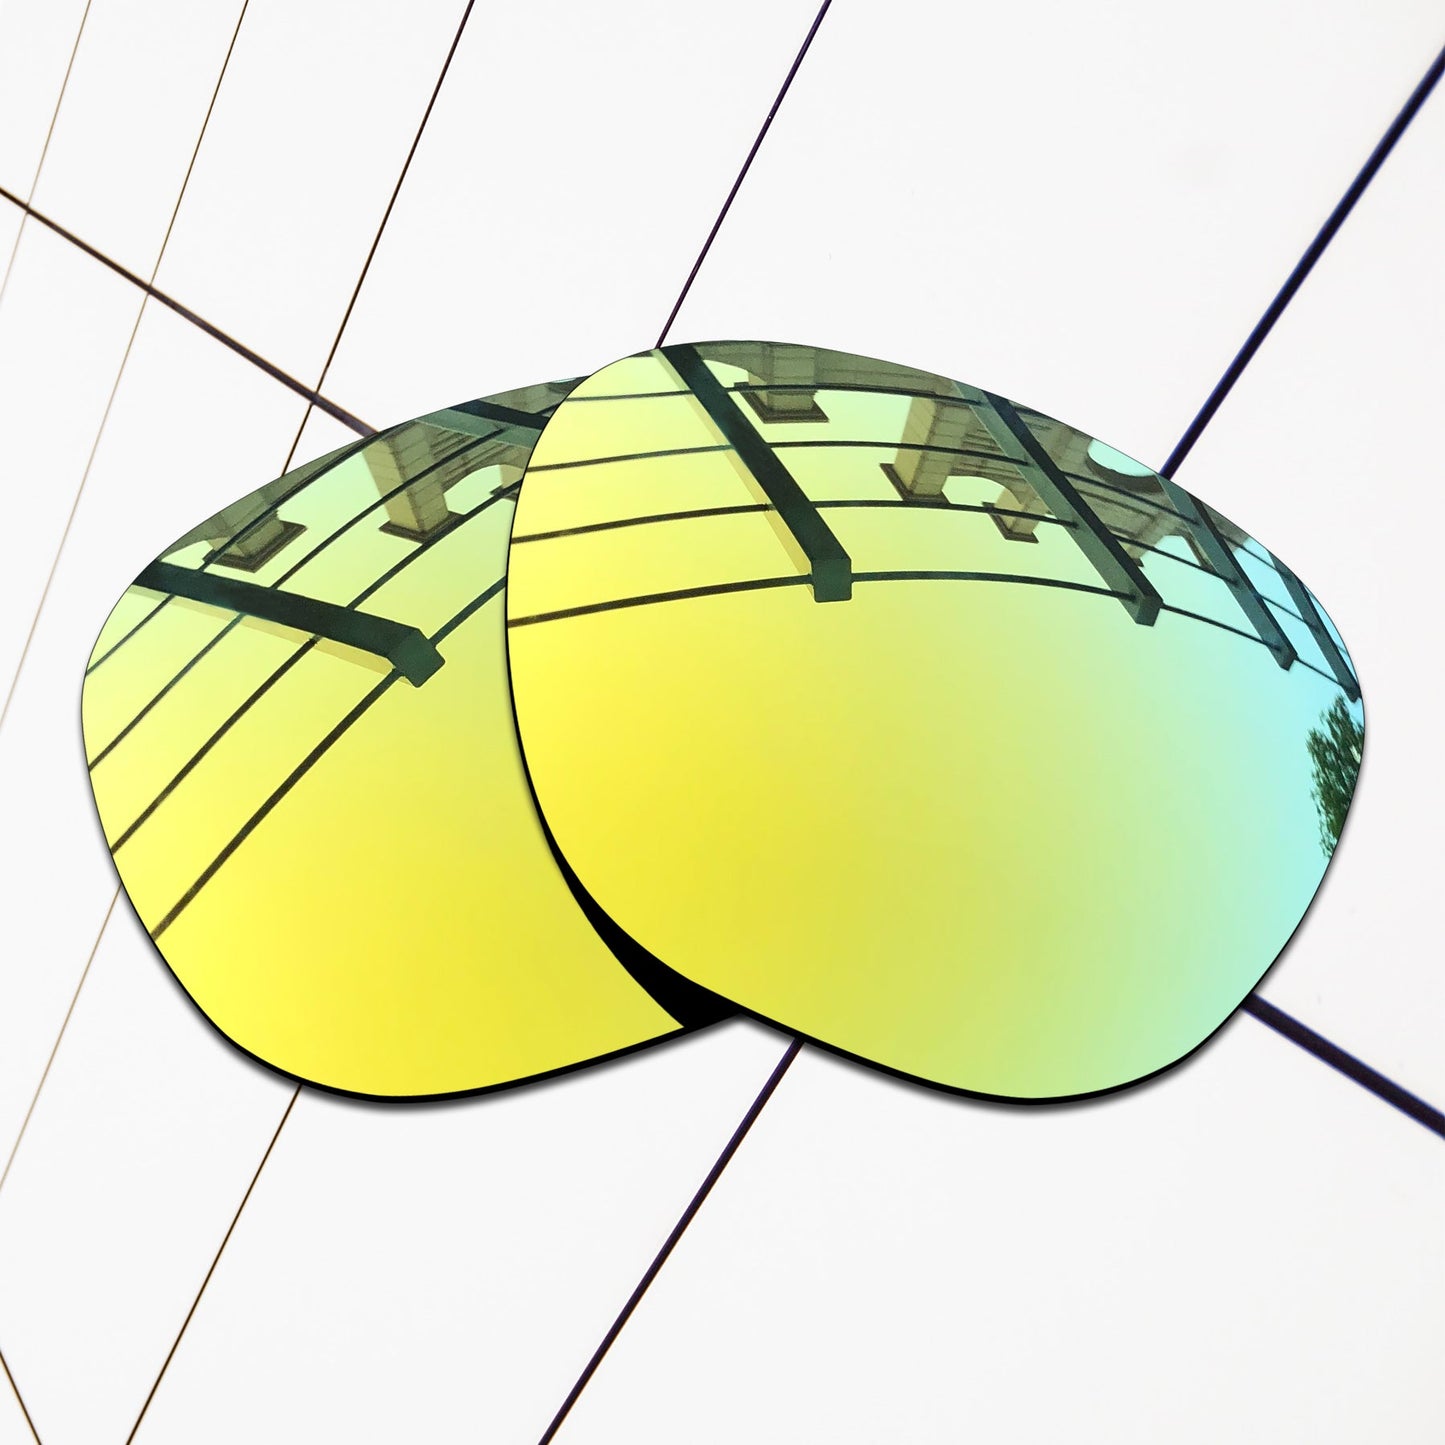 Polarized Replacement Lenses for Oakley Crossrange R Sunglasses